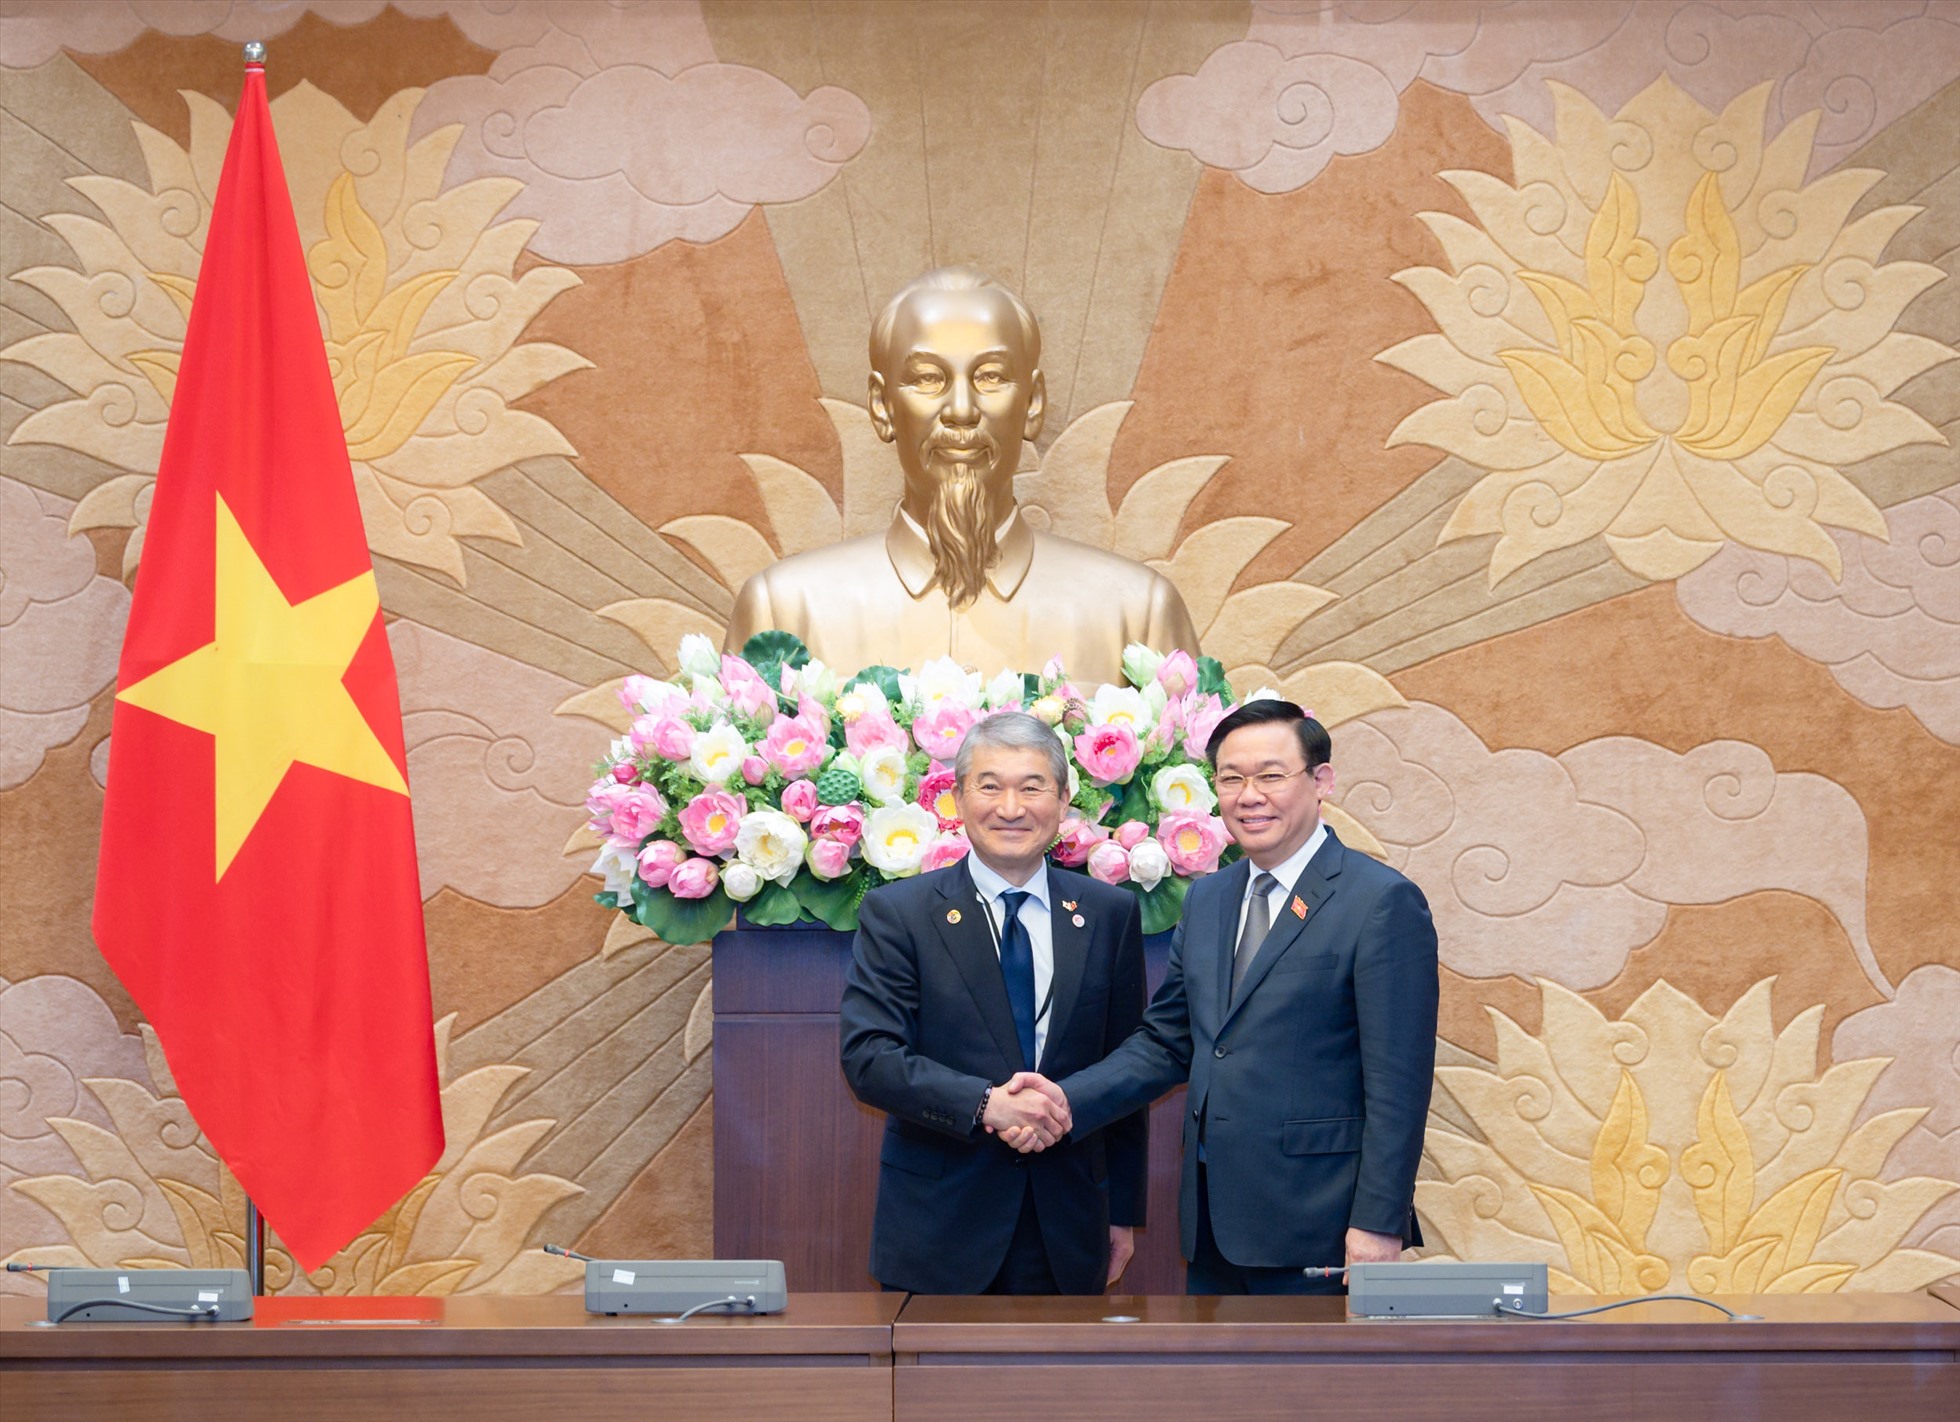 Chủ tịch Quốc hội Vương Đình Huệ cùng Chủ tịch Ủy ban Kinh tế Nhật-Việt của KEIDANREN Ichikawa Hideo. Ảnh: Quochoi.vn